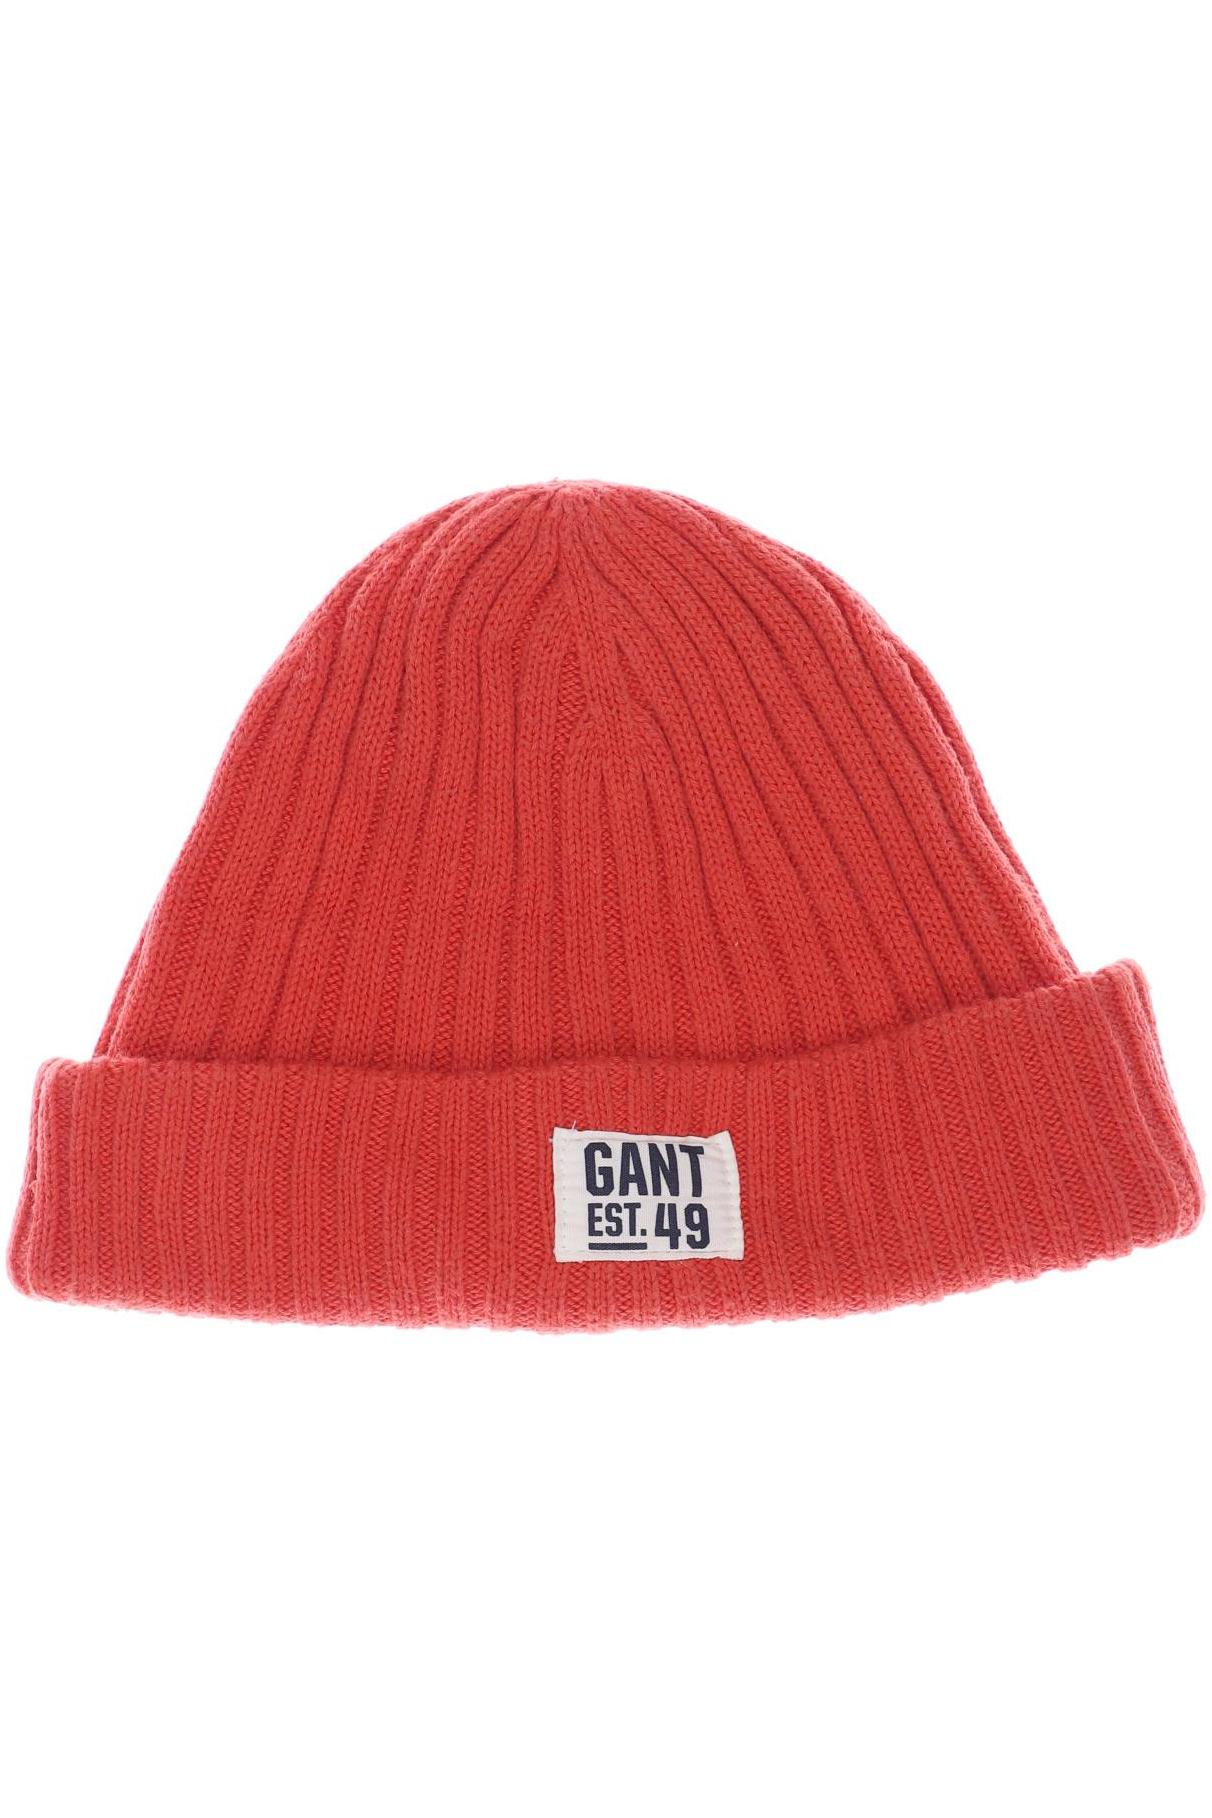 GANT Herren Hut/Mütze, rot von Gant